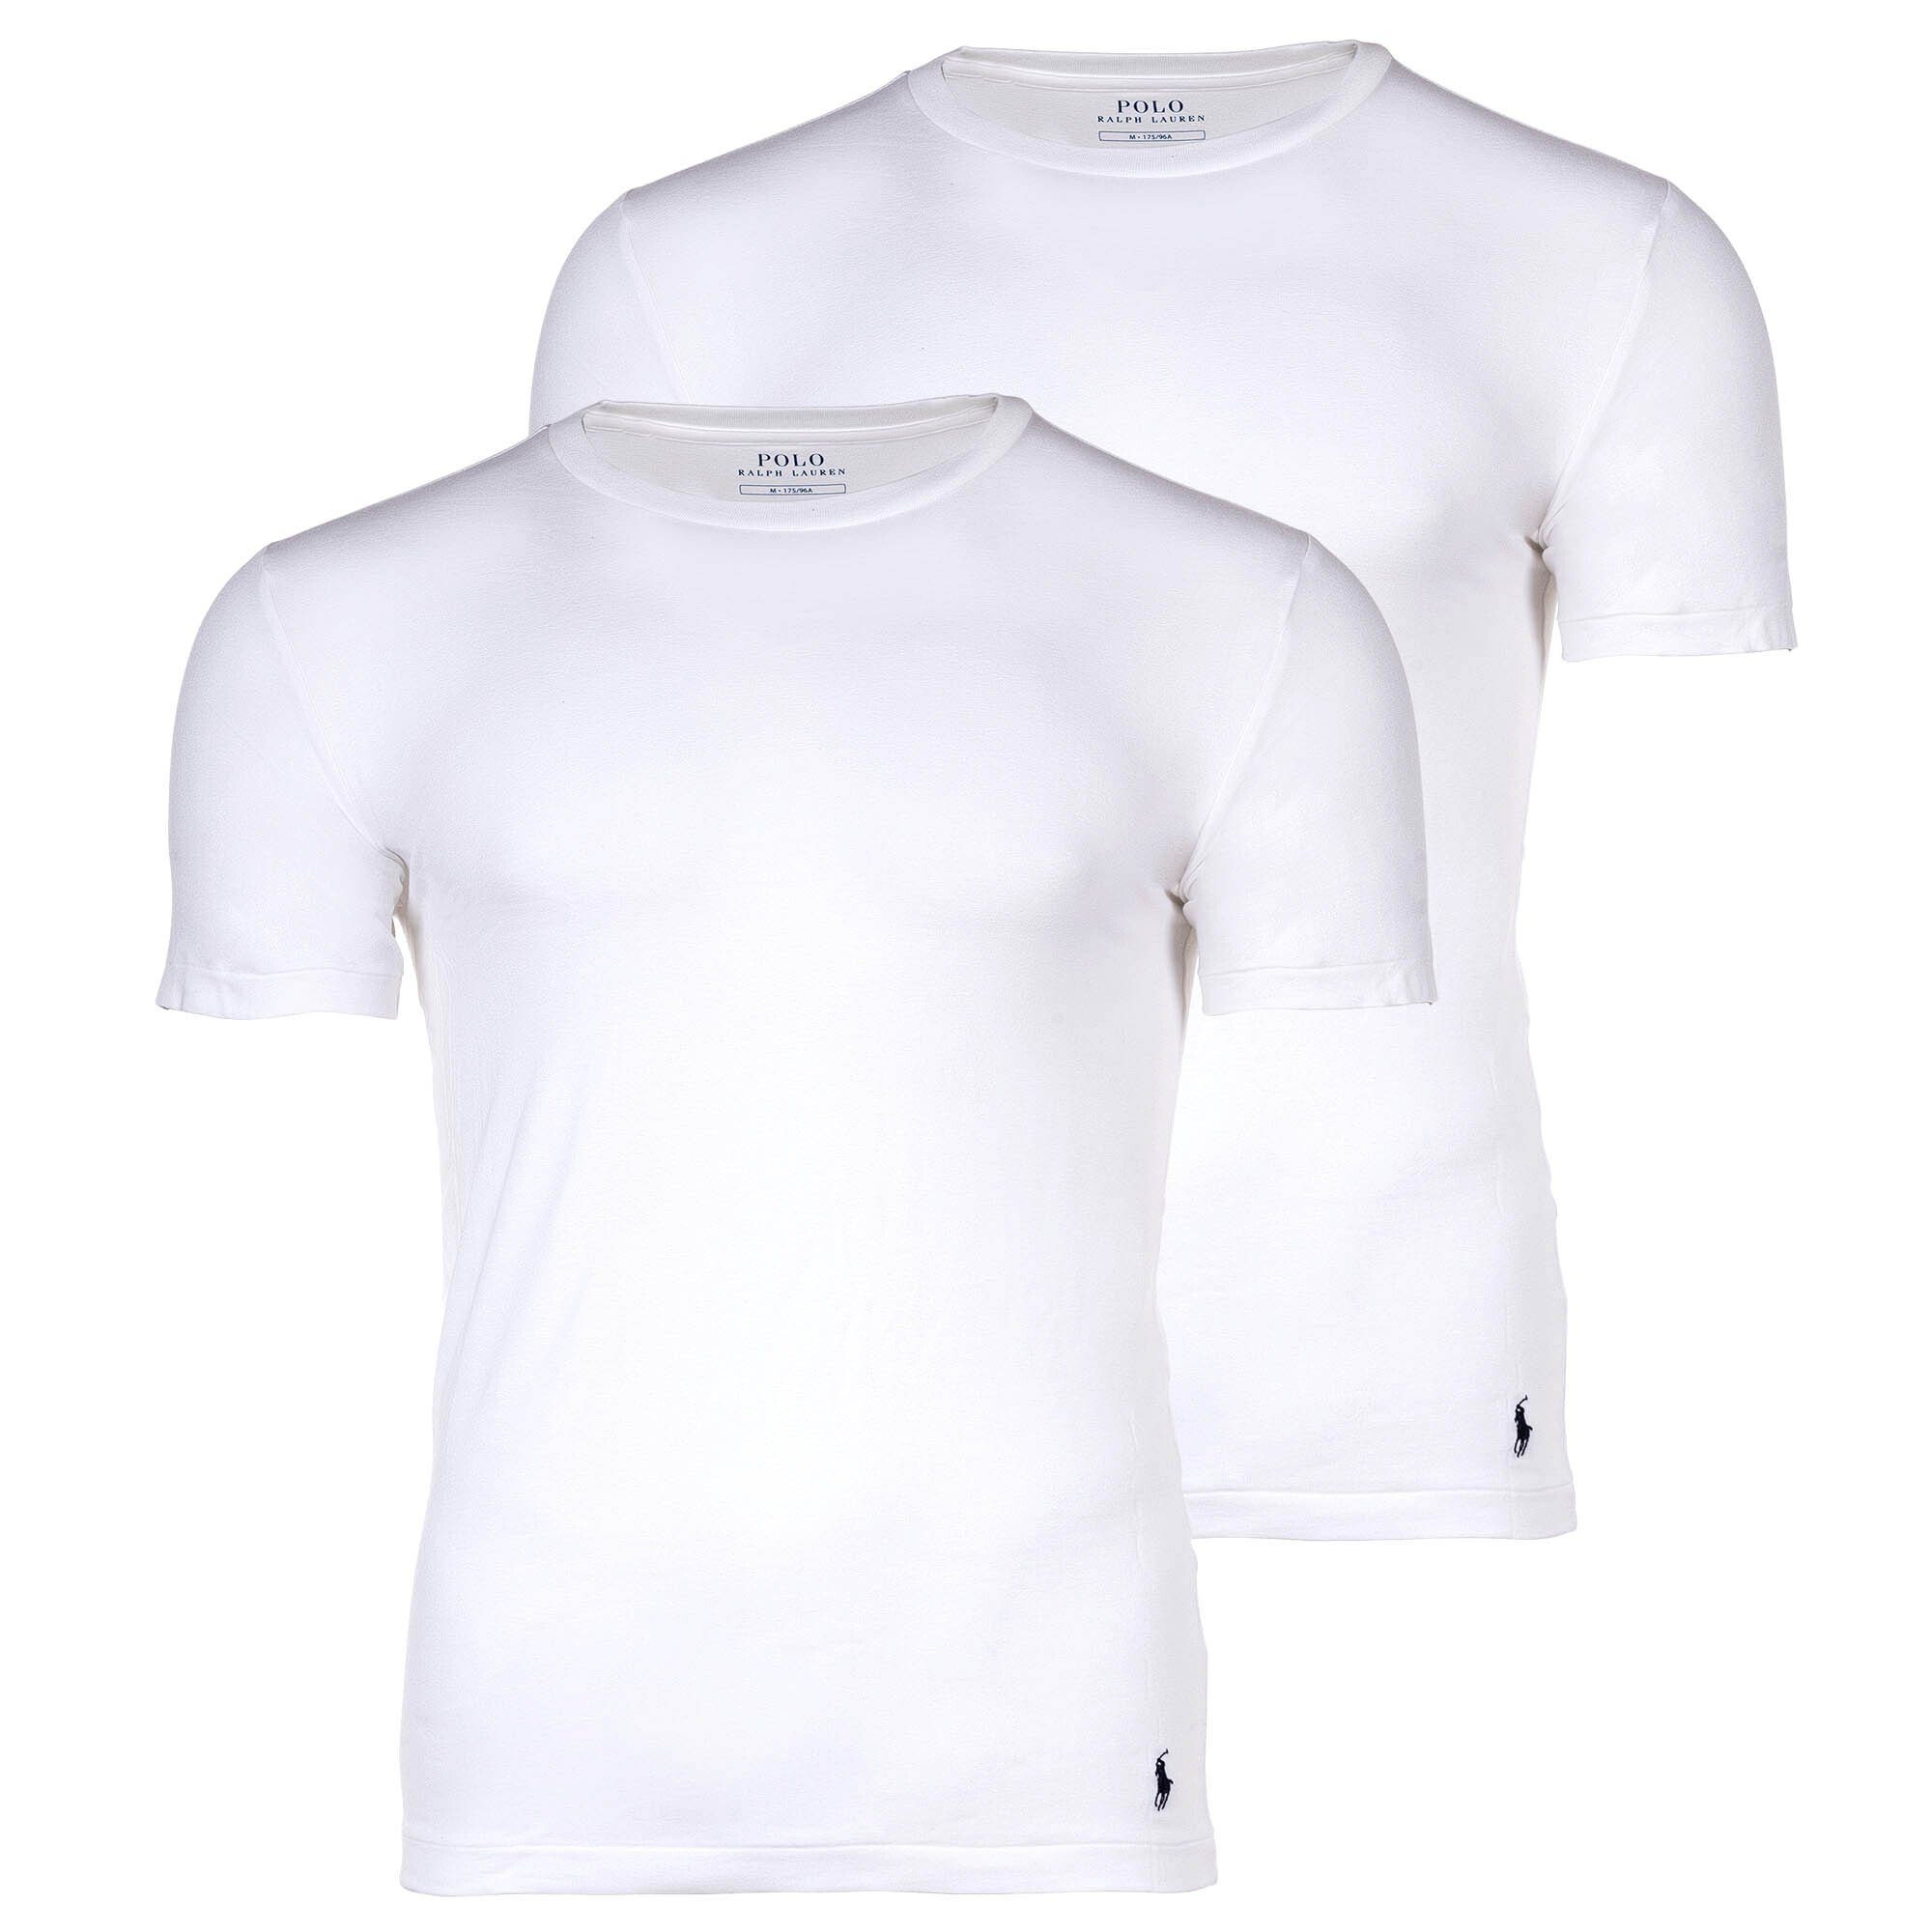 Polo Ralph Lauren T-Shirt Herren T-Shirts, 2er Pack - CLASSIC-2 PACK-CREW Weiß